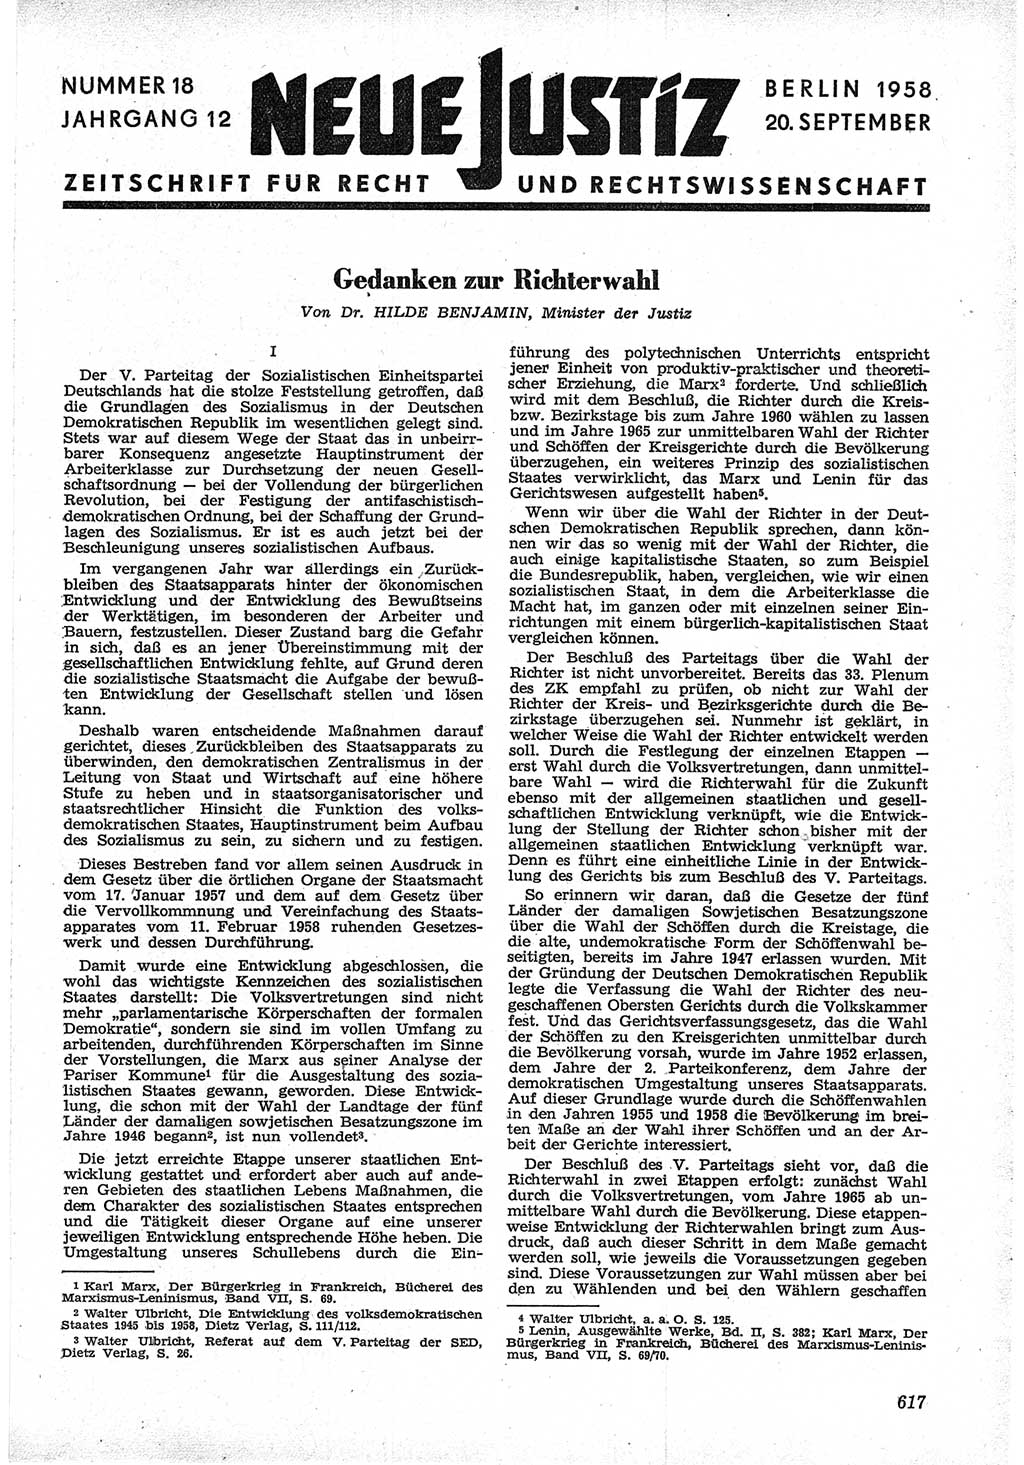 Neue Justiz (NJ), Zeitschrift für Recht und Rechtswissenschaft [Deutsche Demokratische Republik (DDR)], 12. Jahrgang 1958, Seite 617 (NJ DDR 1958, S. 617)